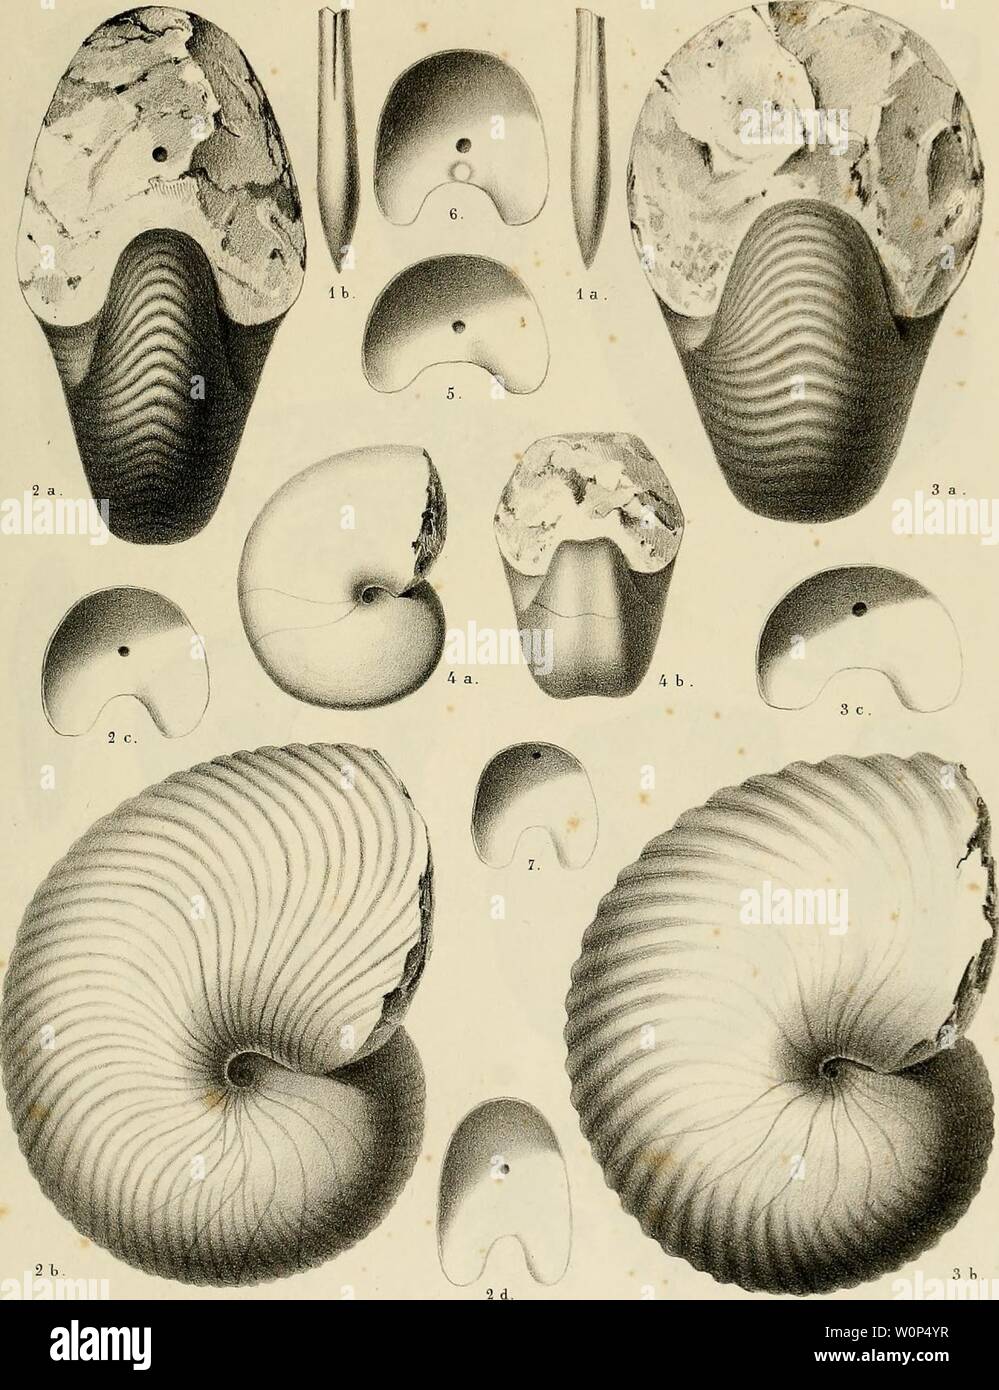 Archive image from page 10 of Description des mollusques fossiles qui. Description des mollusques fossiles qui se trouvent dans les grès verts des environs de Genève descriptiondesmo01pict Year: 1847-1853  PI. 1.    JÎCLÔler ad-nai. dtL U luJ,. Xah SchmidÀ Gtnift Fi.l, Belemnites minimus. Fi. 2, Nautilus Neckerianus . Fig.3. N. Saussnreanus. Fi.4. N. lihodani. Fi.S a 7. Cloisons de Nautiles. Stock Photo